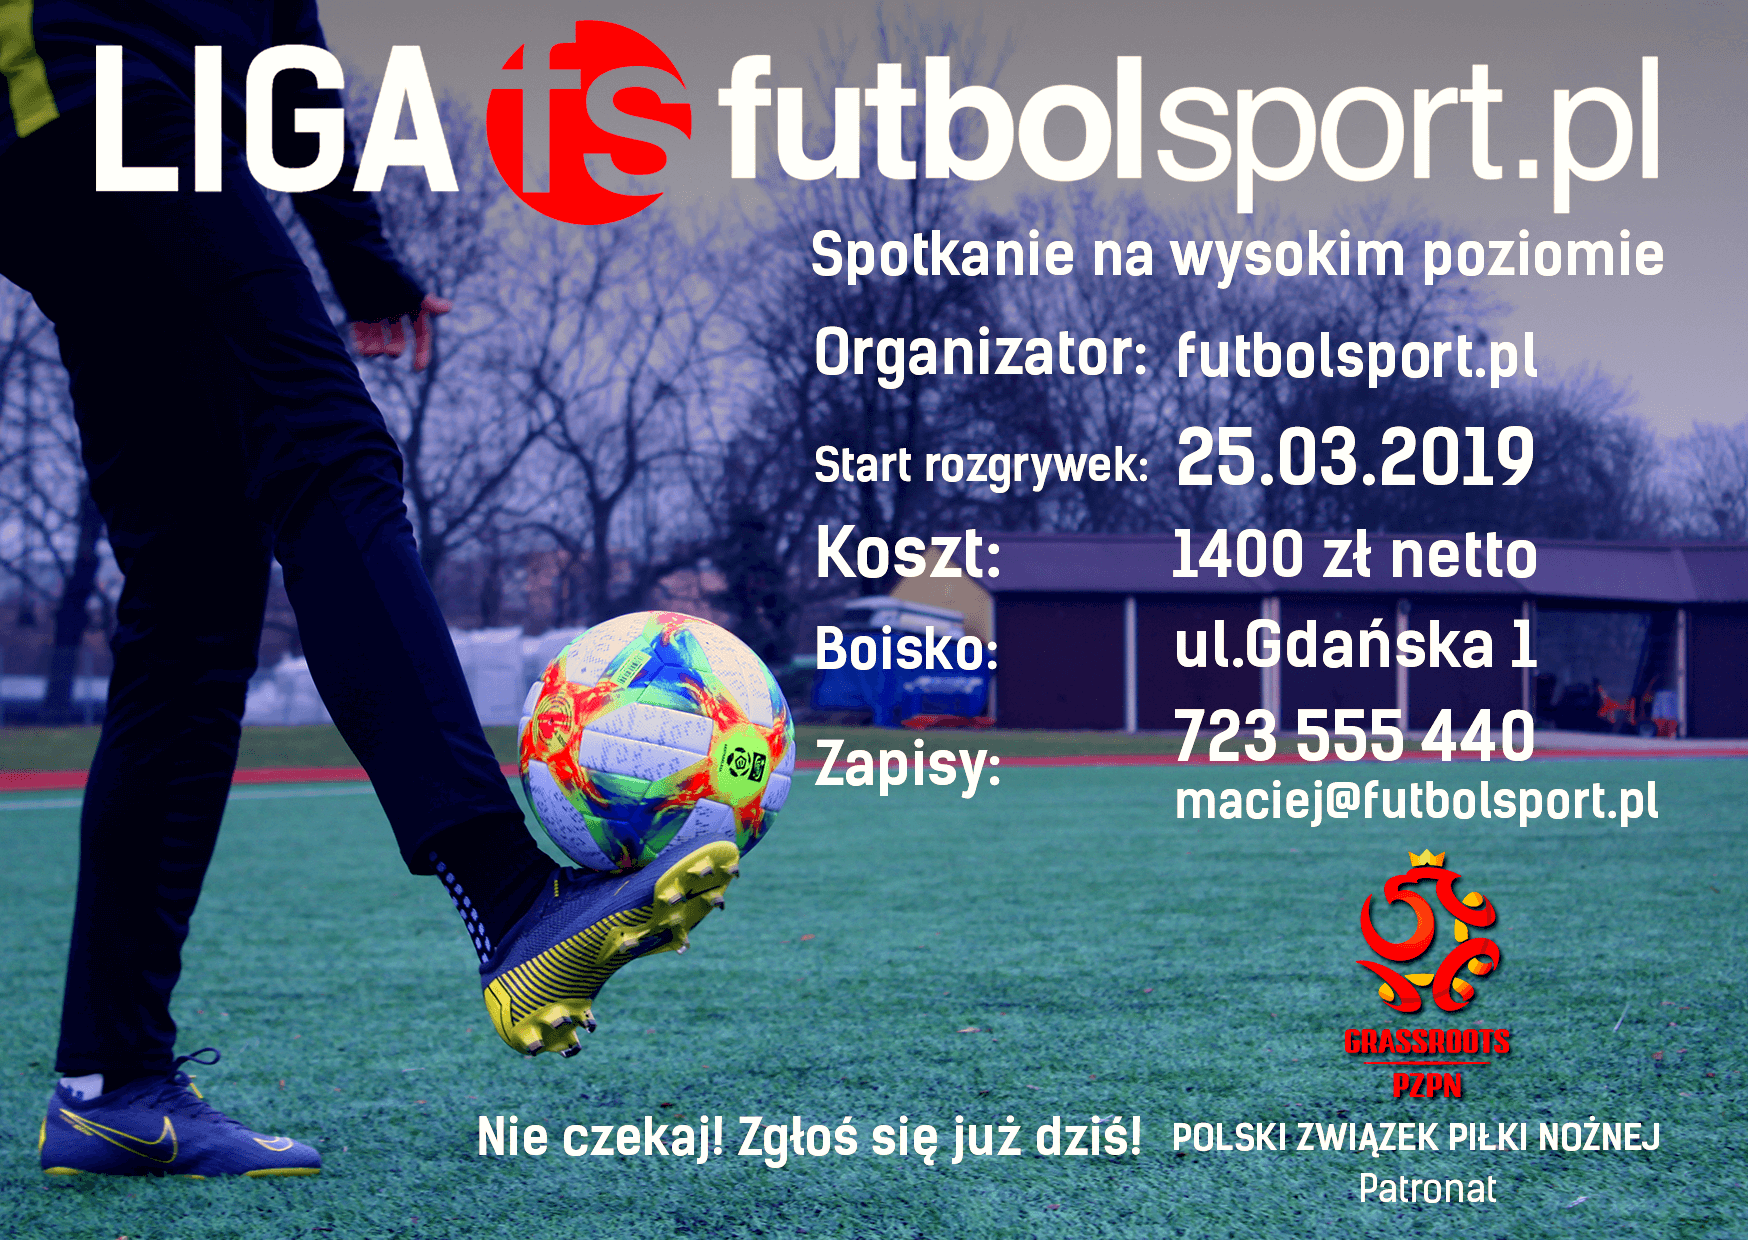 Liga futbolsport.pl z patronatem PZPN